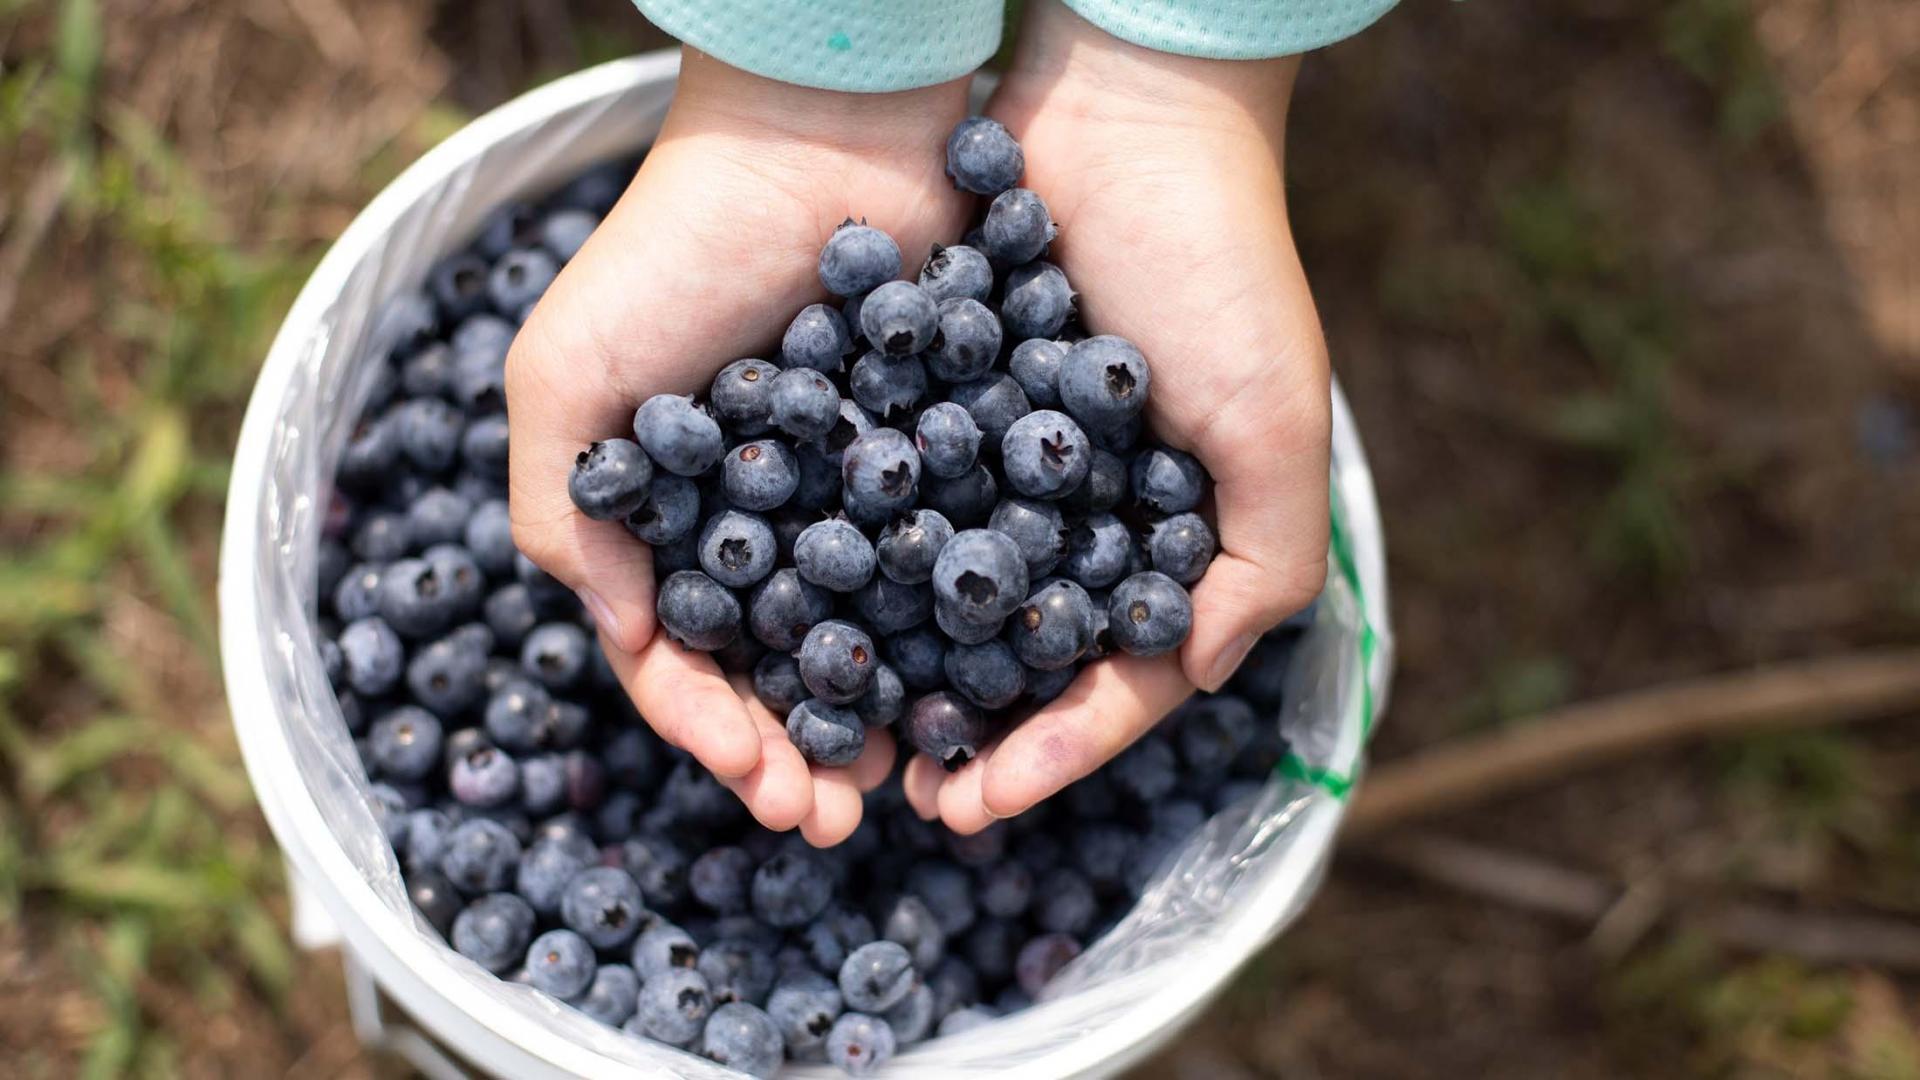 Hands full of blueberries.